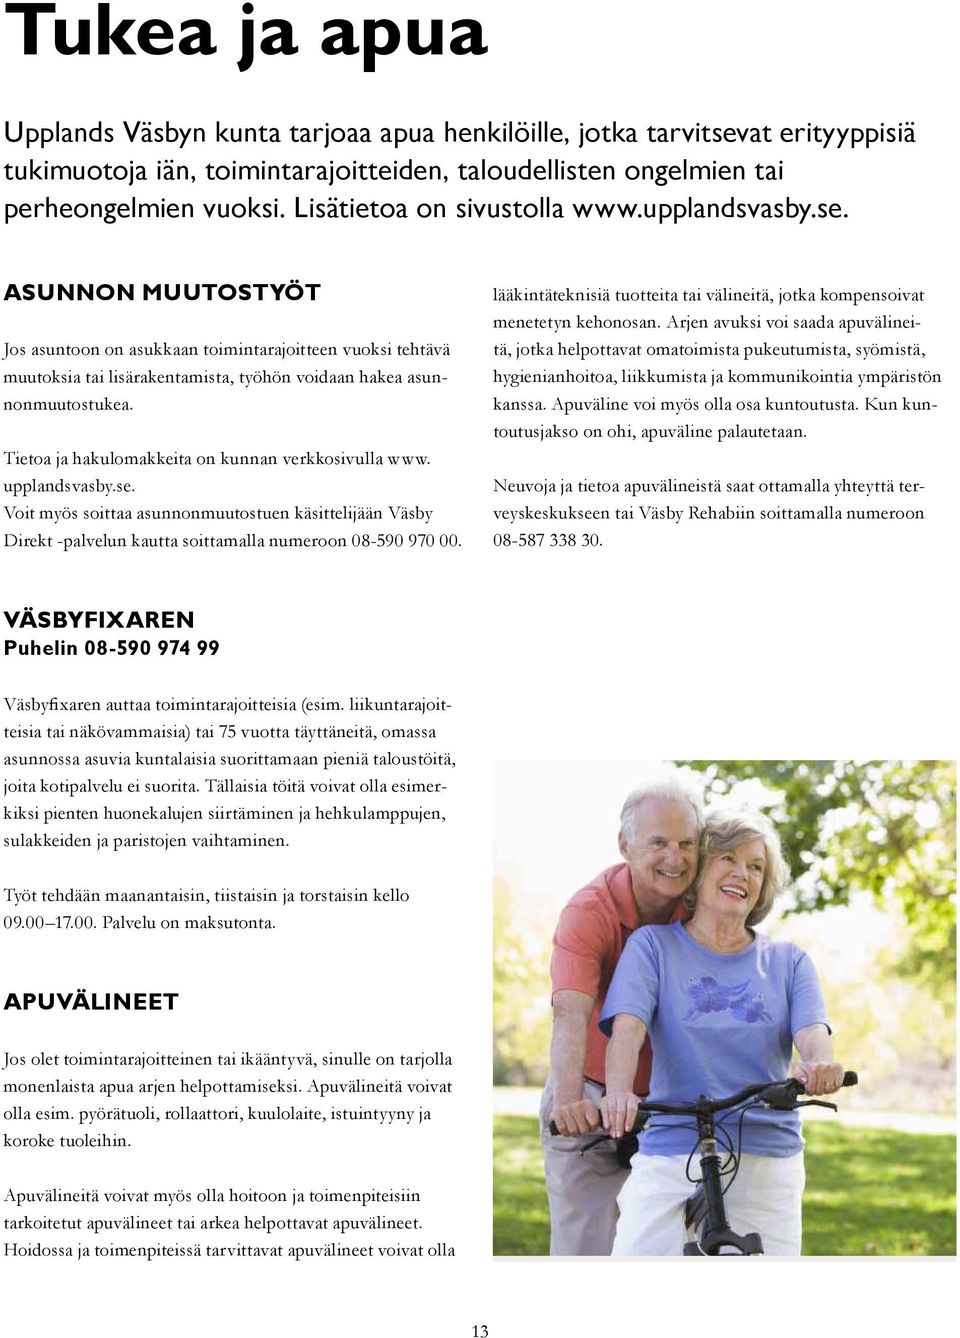 Tietoa ja hakulomakkeita on kunnan verkkosivulla www. upplandsvasby.se. Voit myös soittaa asunnonmuutostuen käsittelijään Väsby Direkt -palvelun kautta soittamalla numeroon 08-590 970 00.